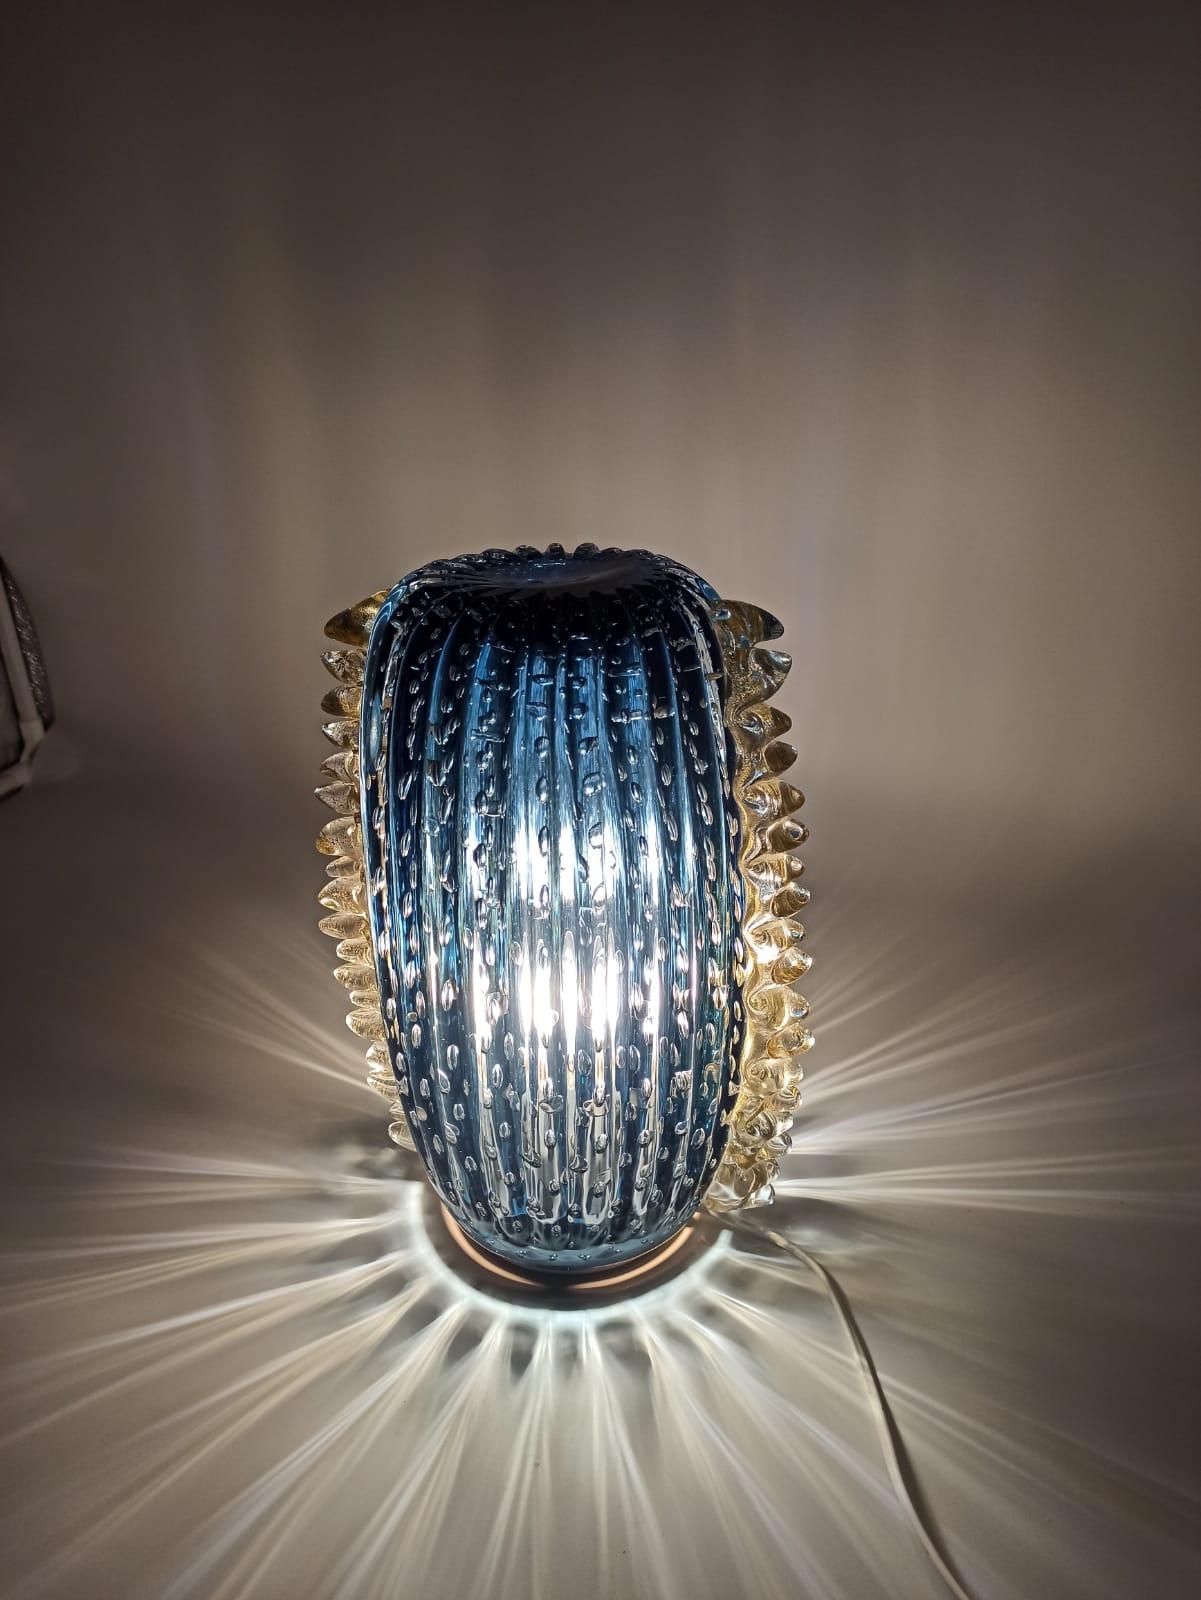 Presentiamo la nostra esclusiva lampada da tavolo, alta 35 cm e realizzata con maestria in vetro artistico di Murano. Dieses faszinierende Stück ist in einen lebhaften Teint getaucht, der durch die sorgfältig von Hand gefertigten Kugeln aus